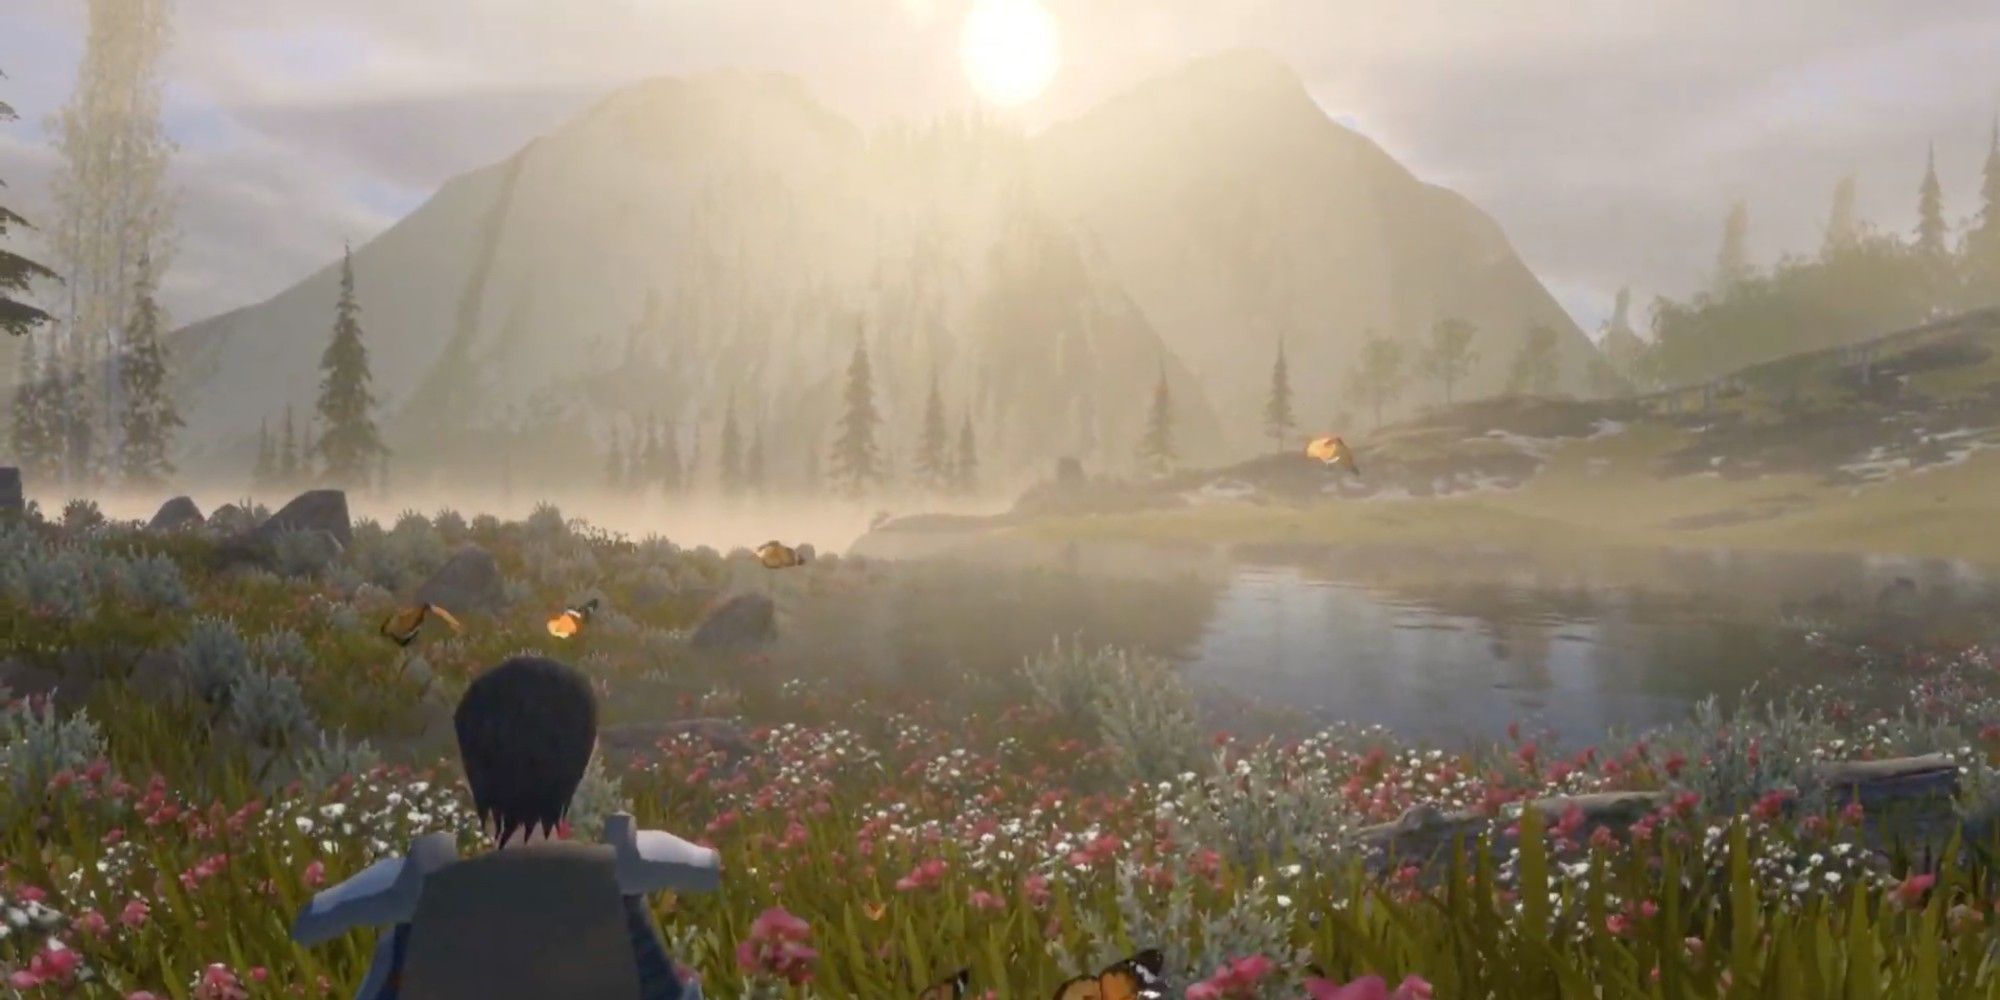 wilderless gameplay staring at scenic sunset in wilderness